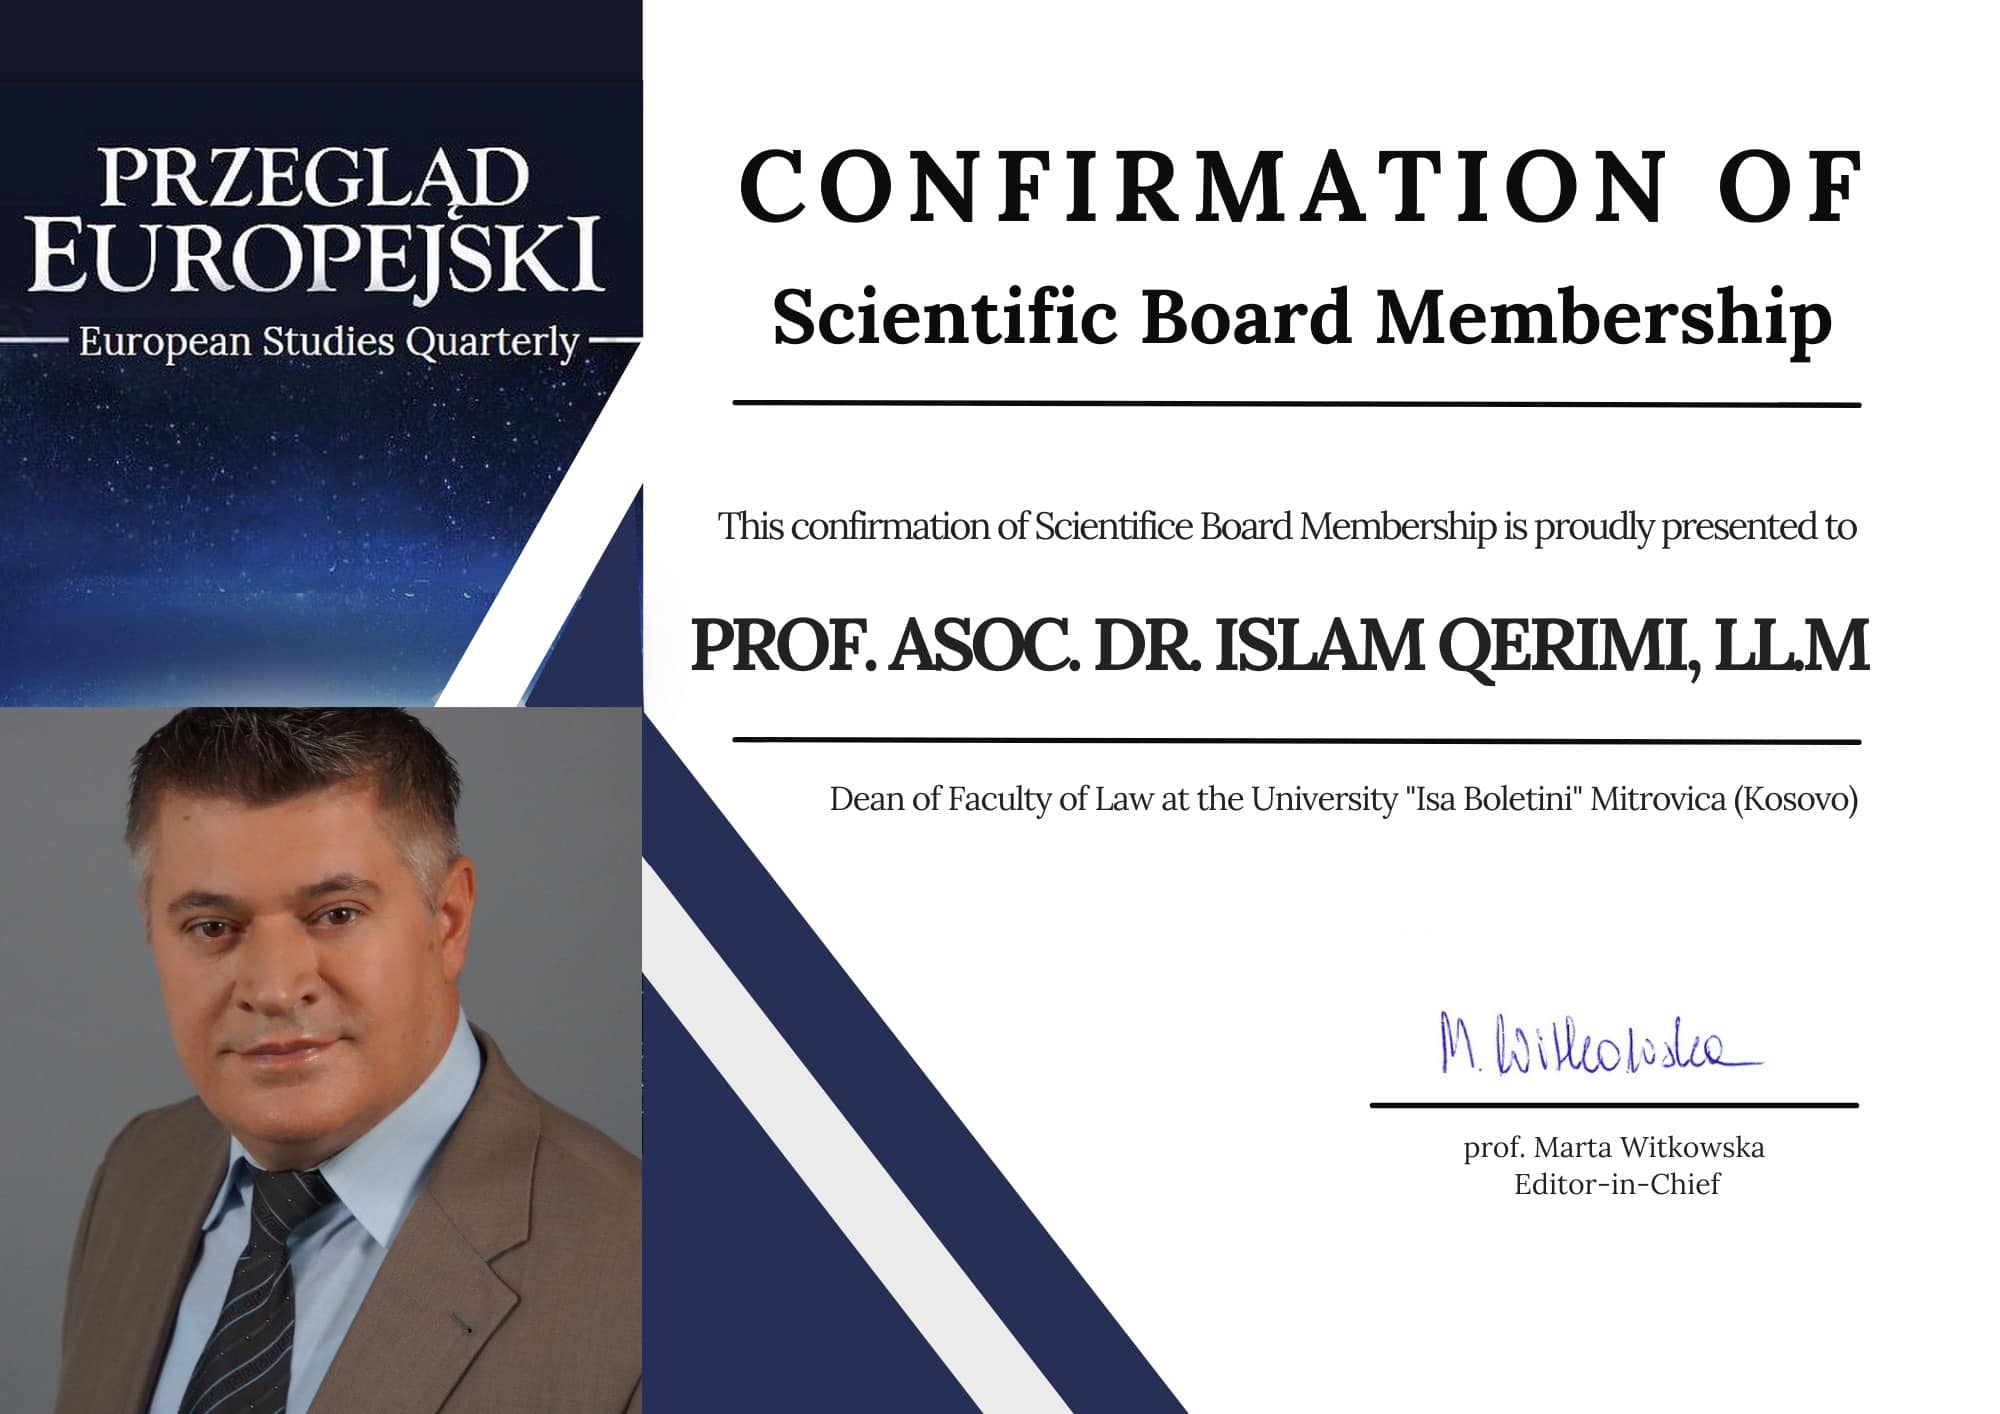 Prof.asoc.dr. Islam Qerimi, Zgjedhet  Anëtar I Bordit Shkencor  Nga Revista E Universitetit Të Varshavës, PRZEGLAD EUROPEJSKI – European Studies Quartely